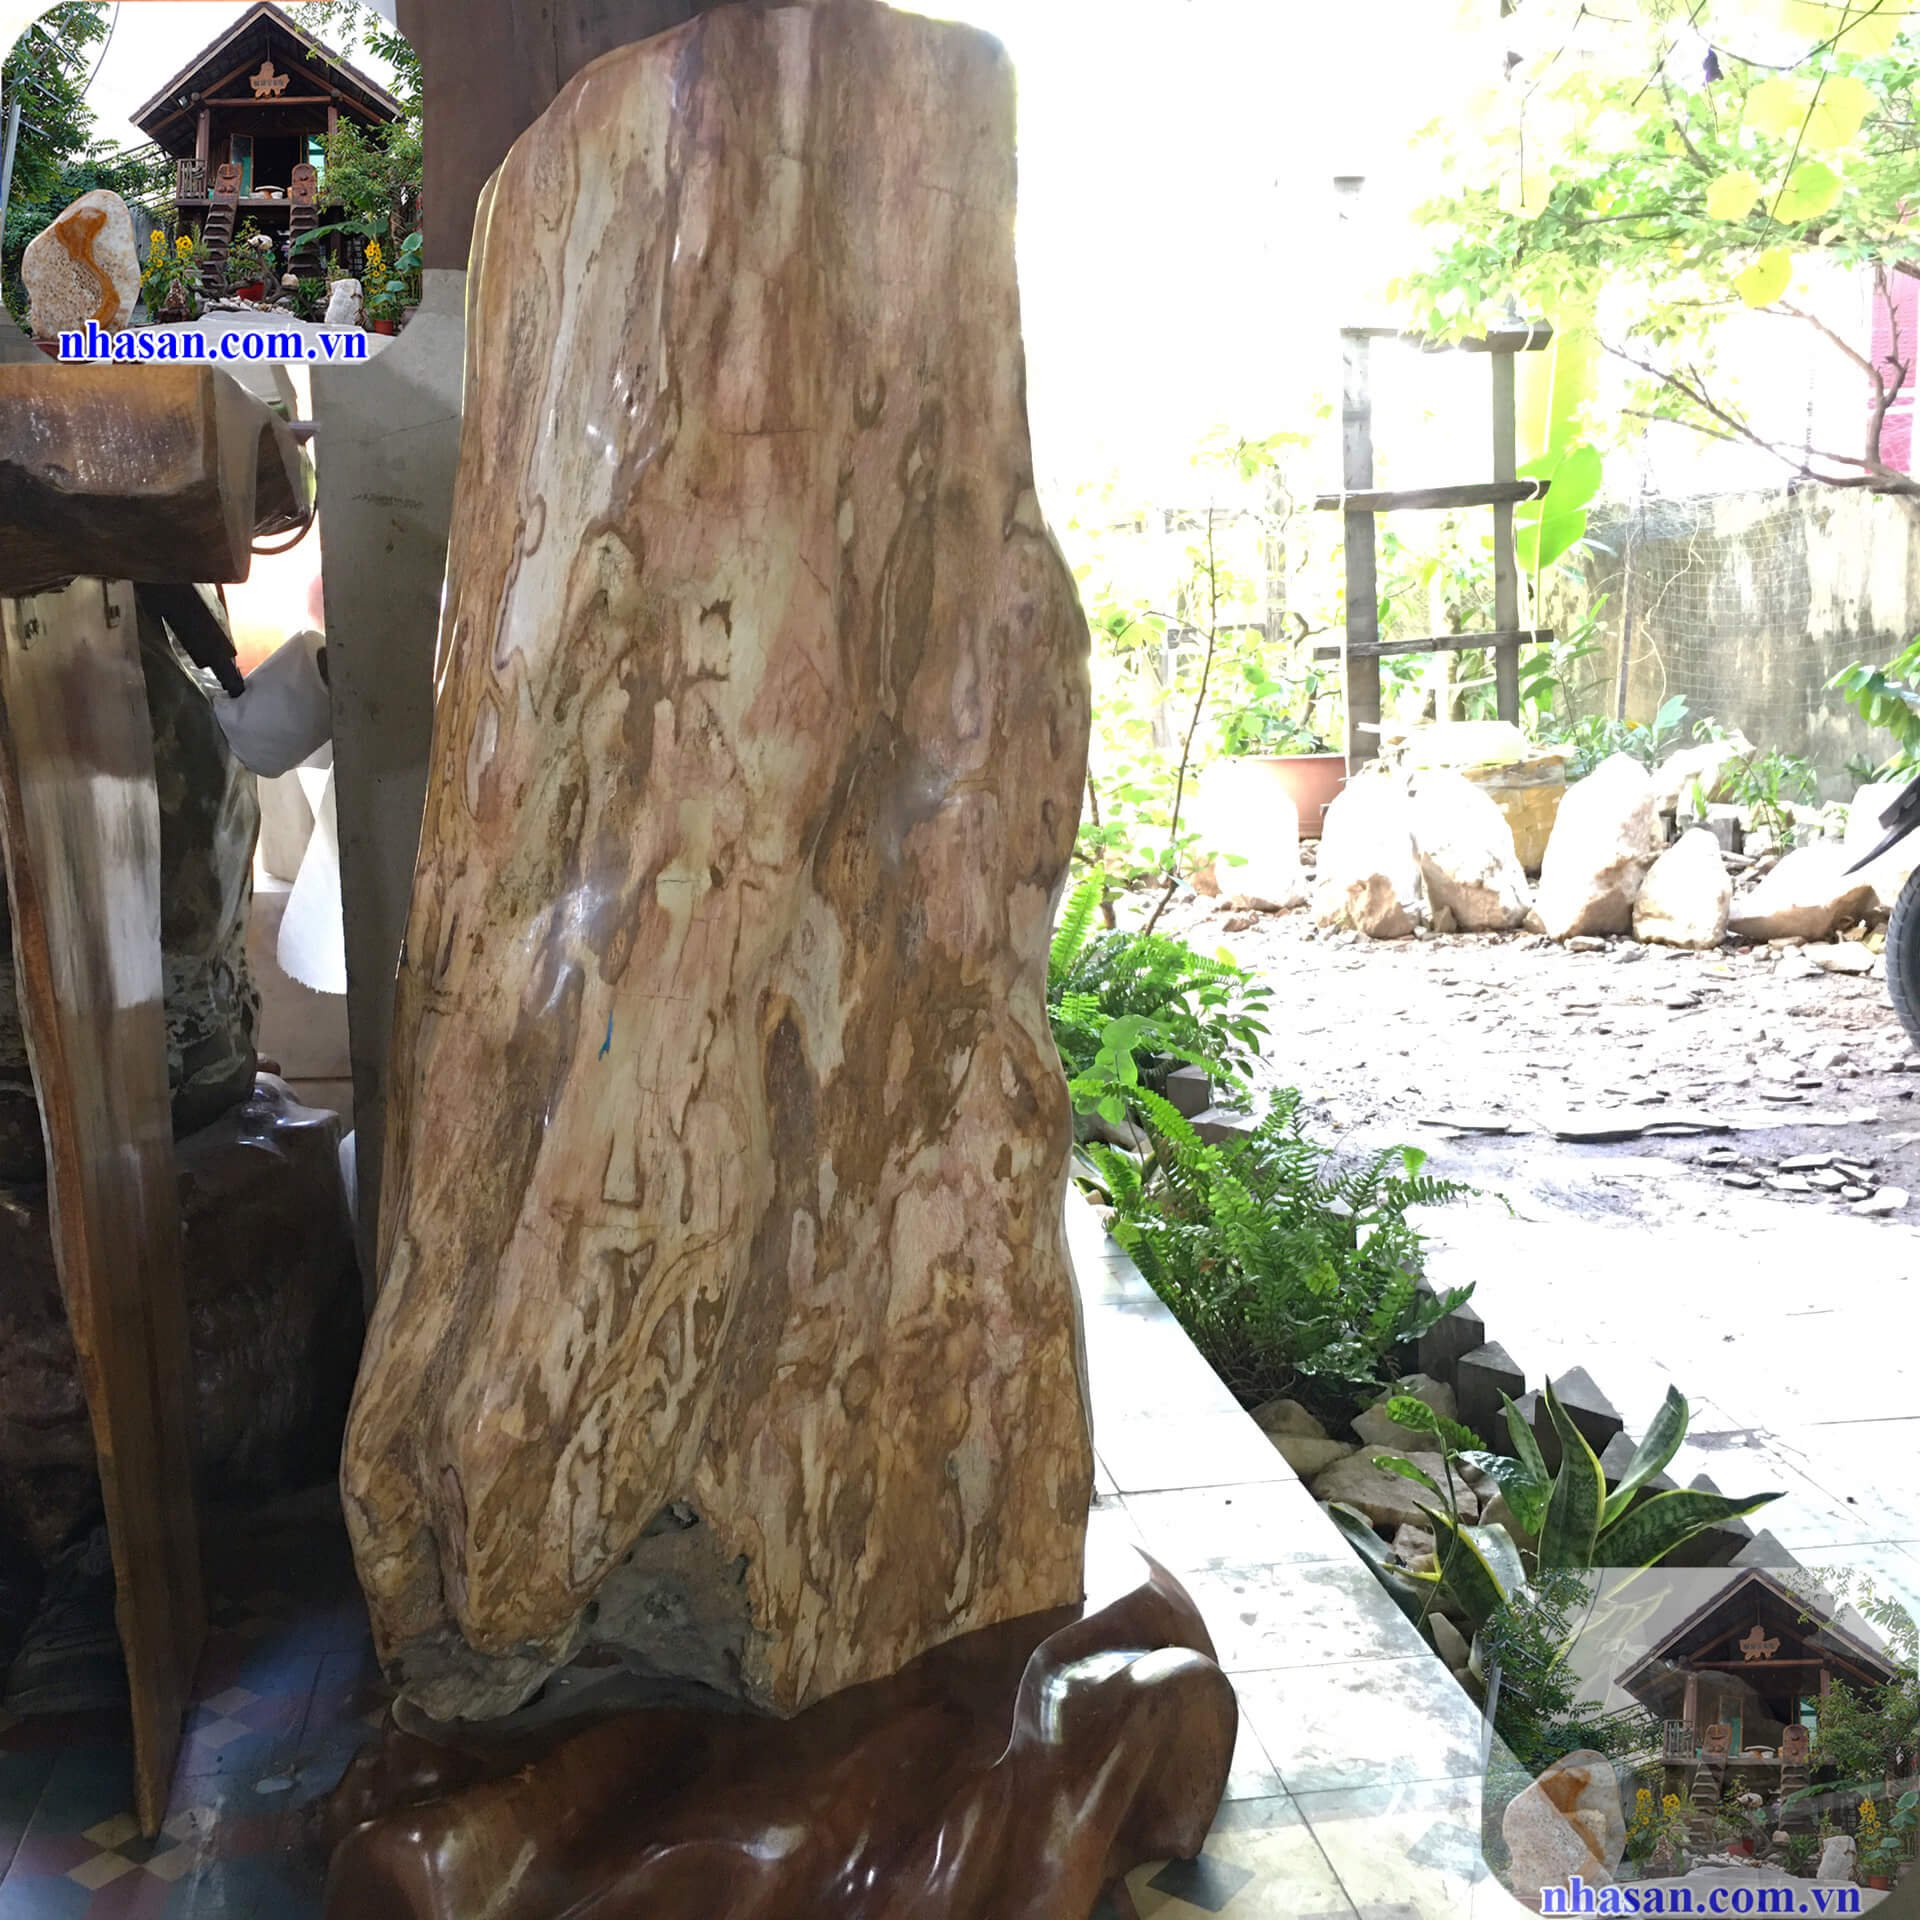 Trụ đá gỗ hóa thạch phong thủy - Vị thần bảo vệ nhà cửa, gia đạo